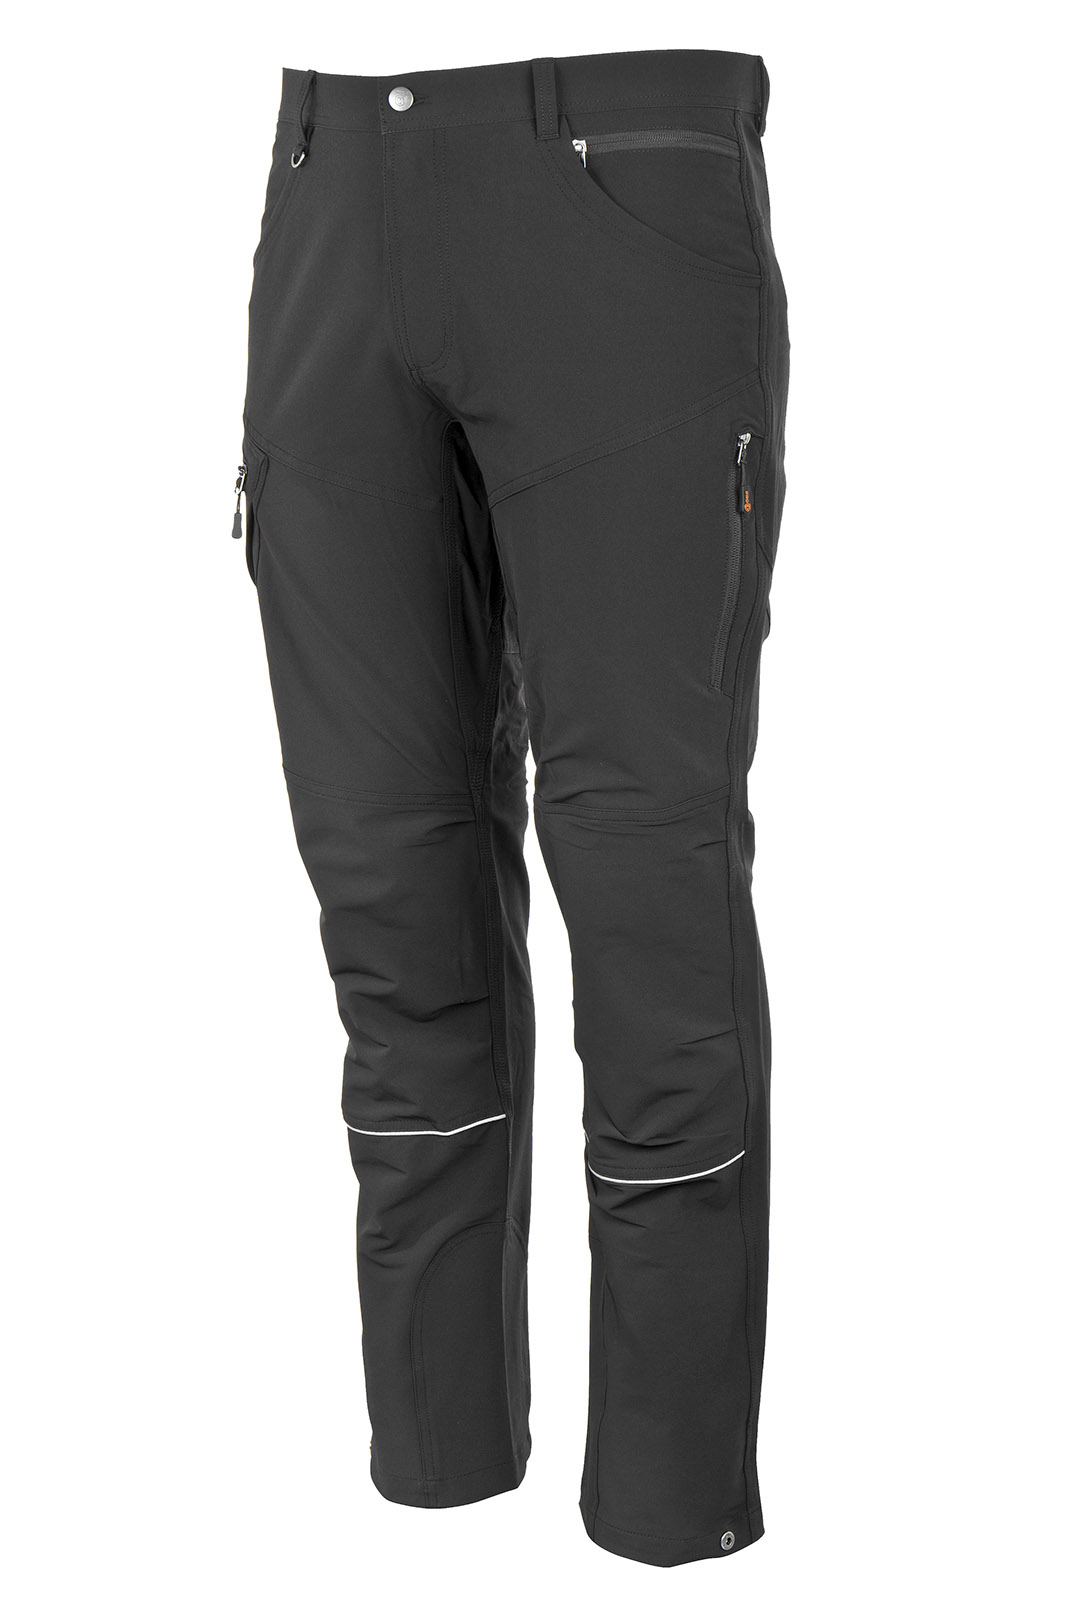 Promacher Outdoorové strečové kalhoty FOBOS TROUSERS BLACK vel.60